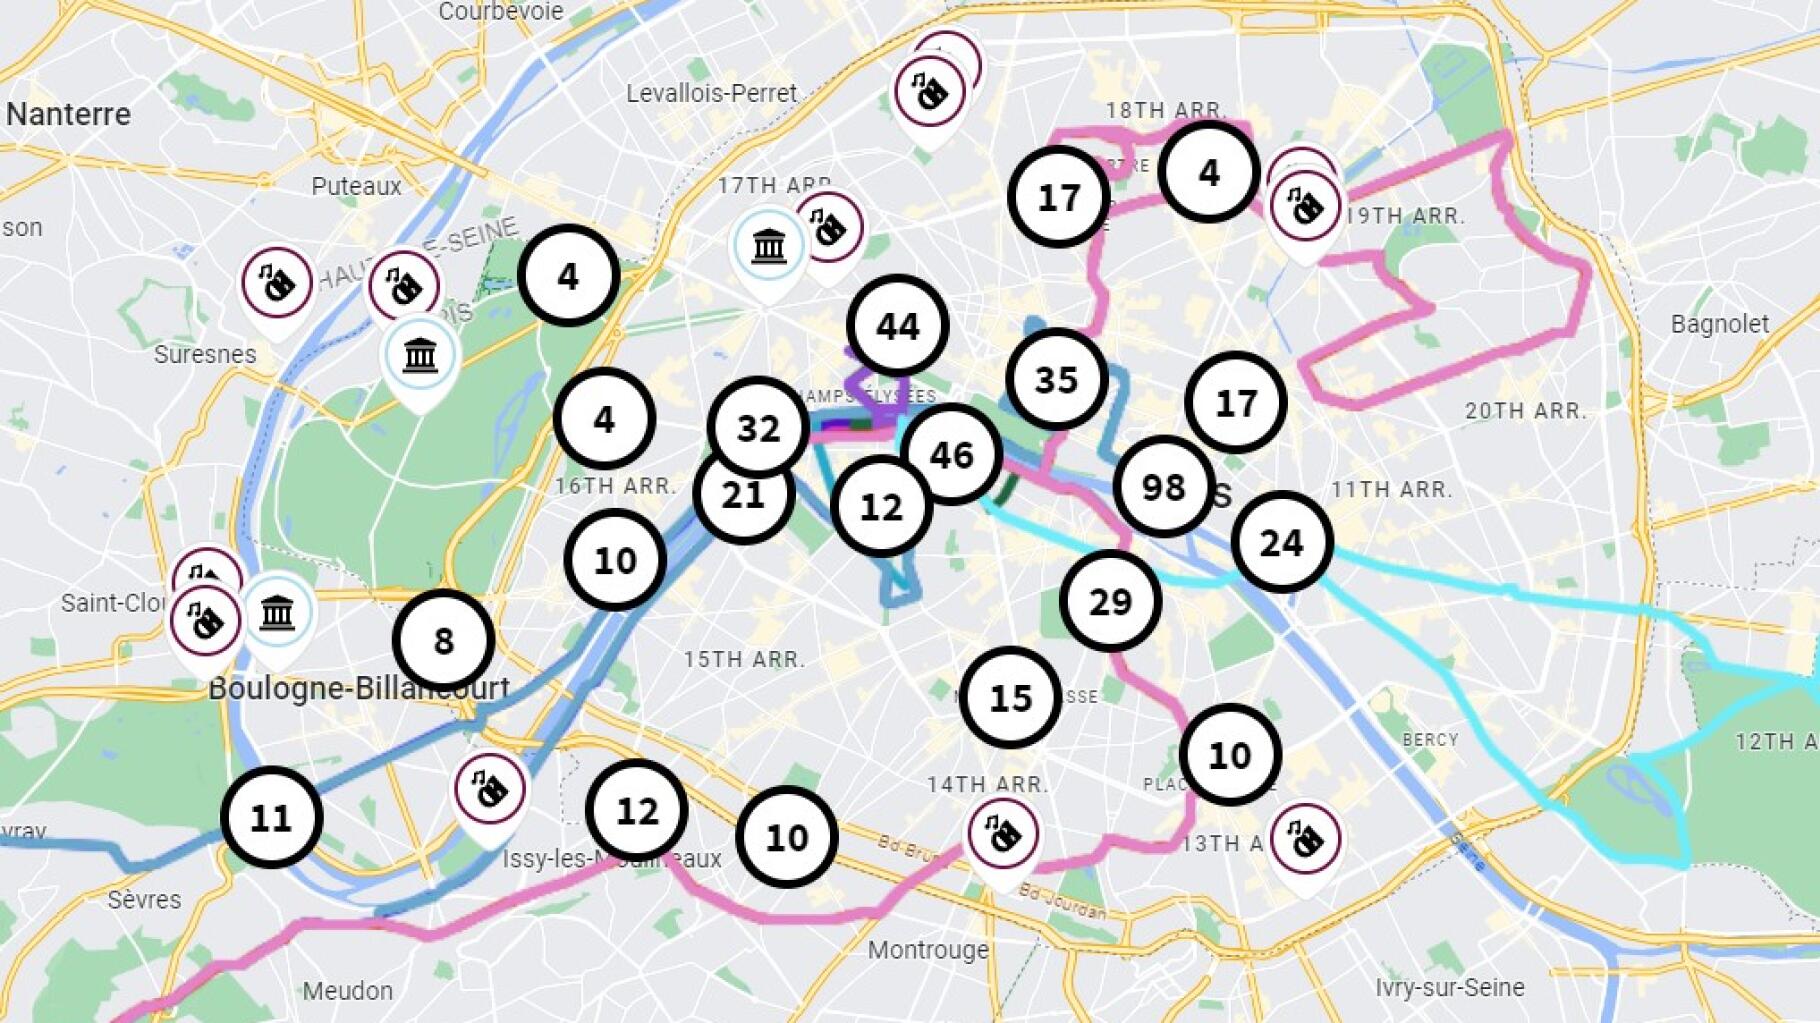   « La Carte des Jeux », un outil interactif qui recense tout ce qu’il y a à faire pendant Paris-2024  